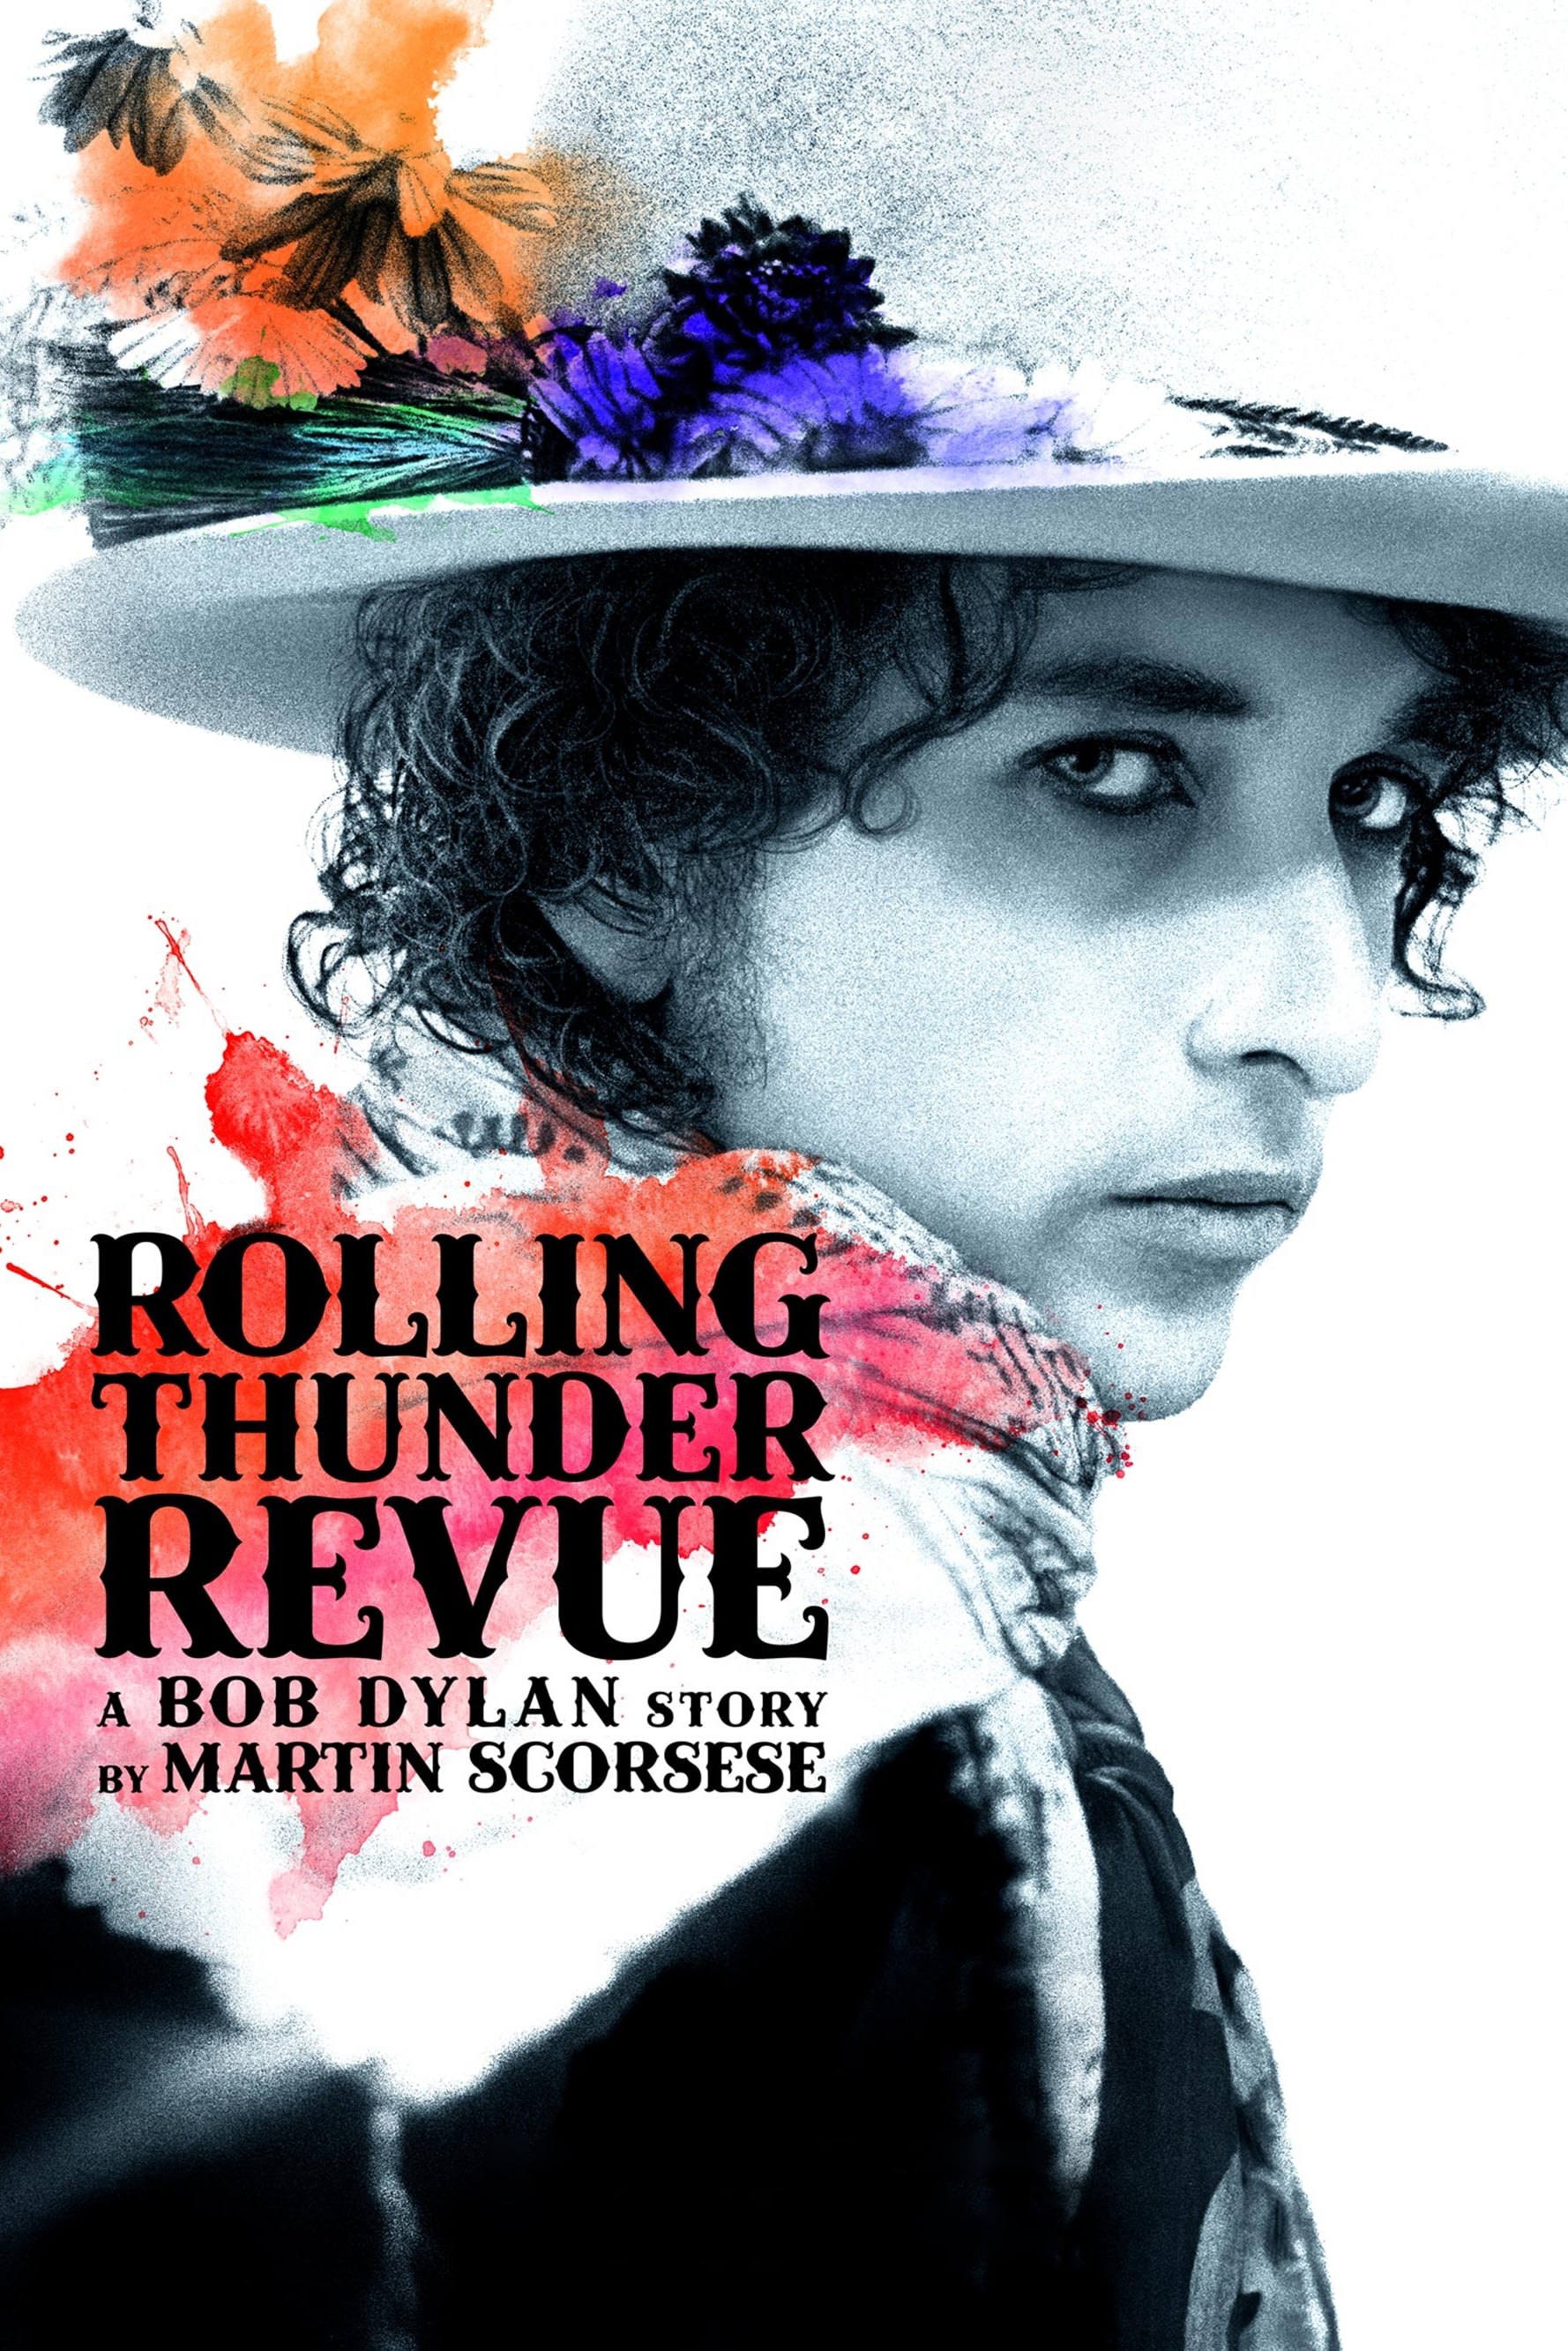 Caratula de Rolling Thunder Revue: A Bob Dylan Story by Martin Scorsese (Rolling Thunder Revue: A Bob Dylan Story by Martin Scorsese) 